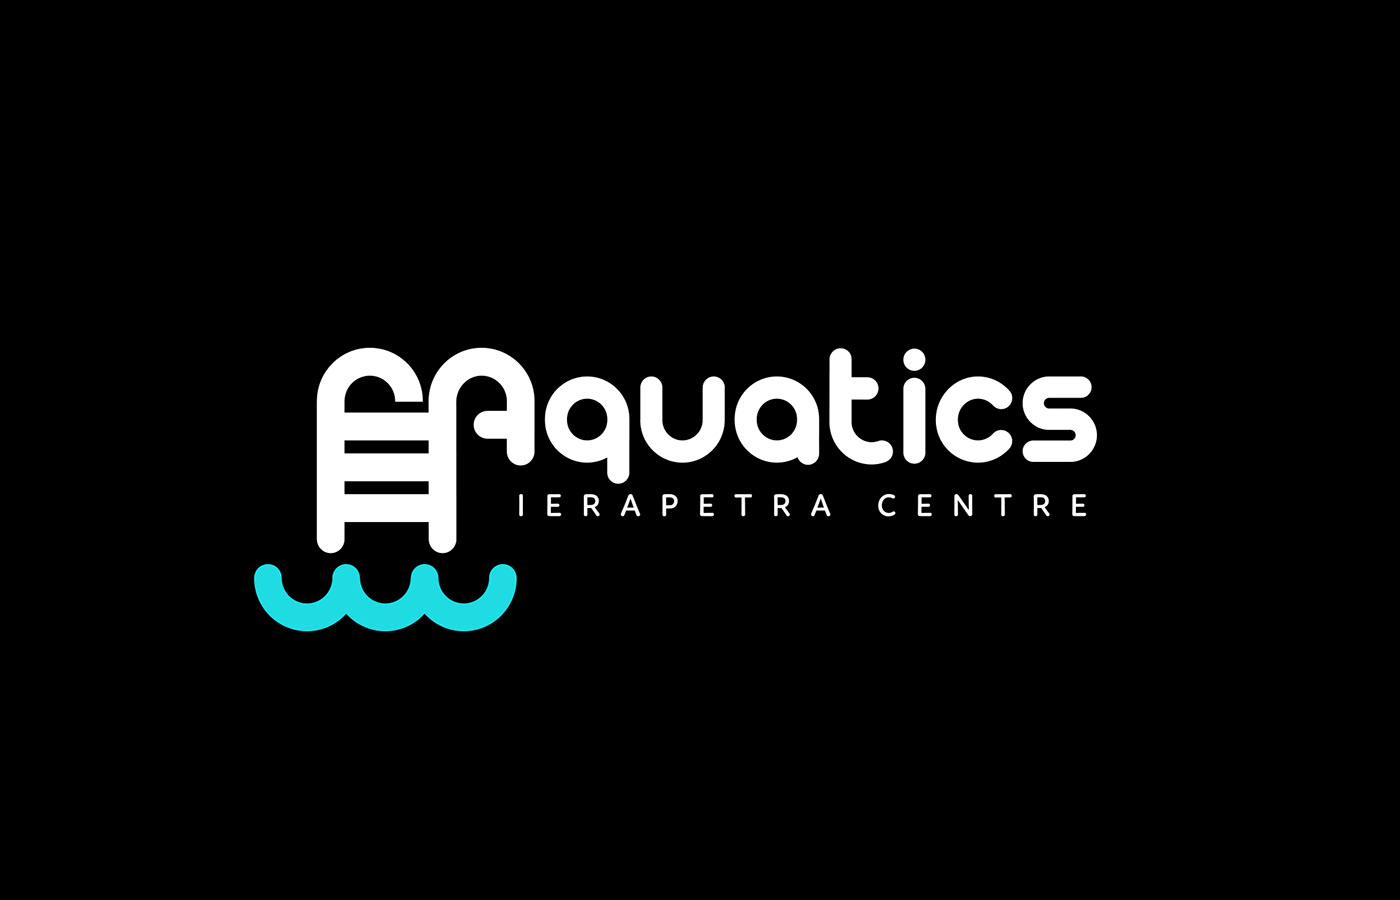 aqua aquatics swim swimming water brand sports sport Aqua sports minimal